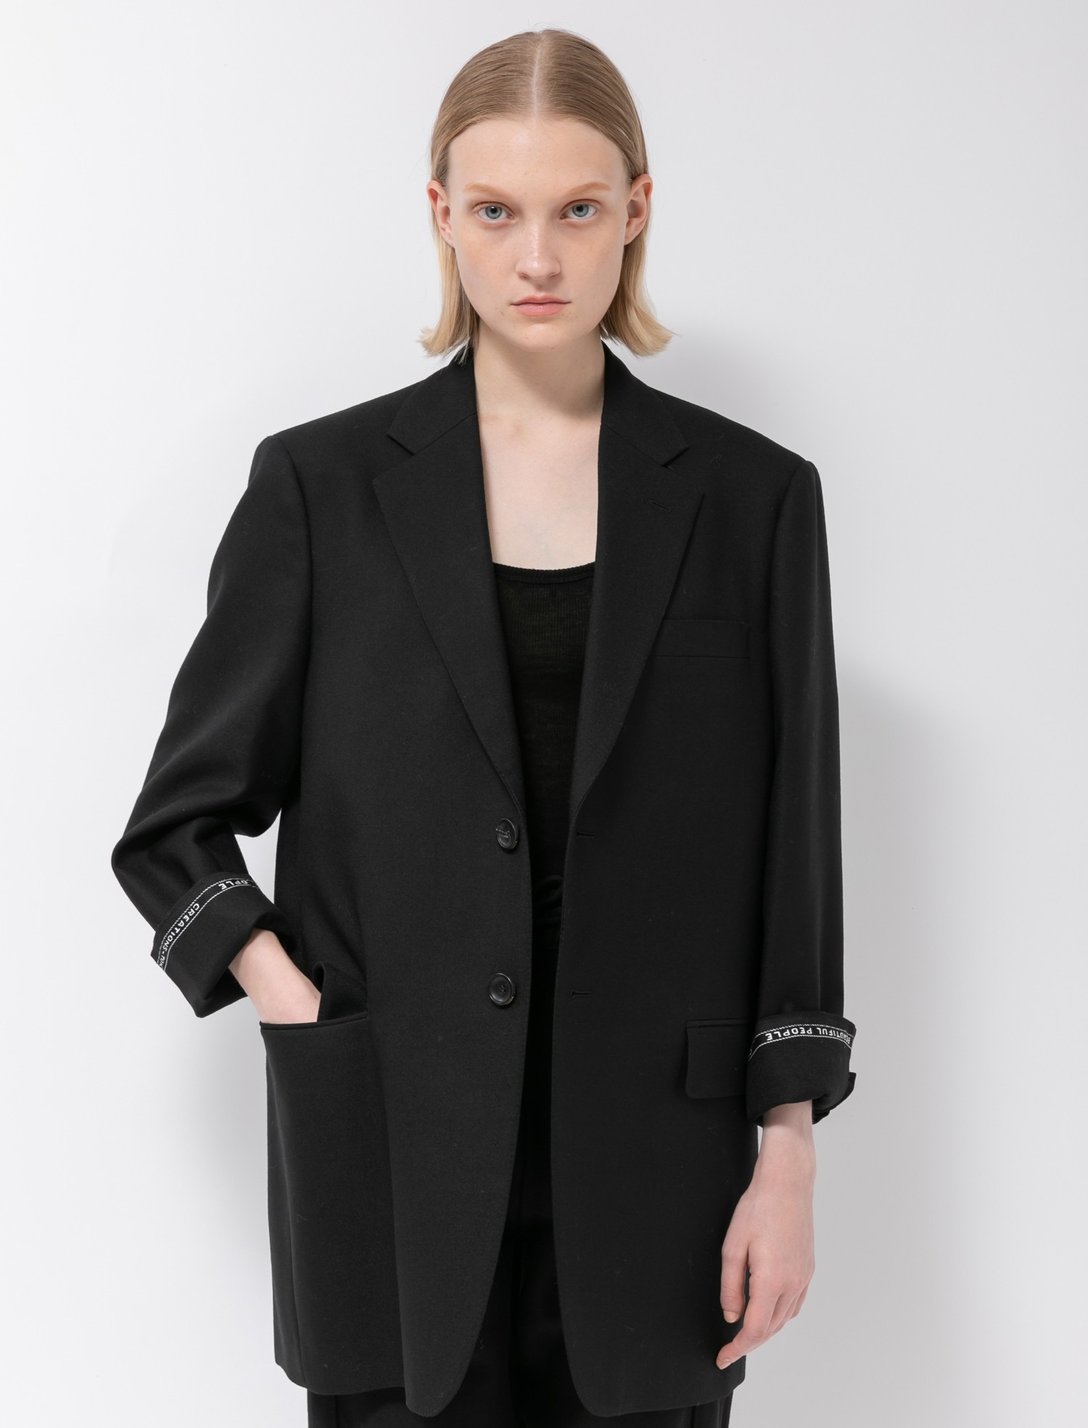 ブラックのジャケットを着用した女性モデル